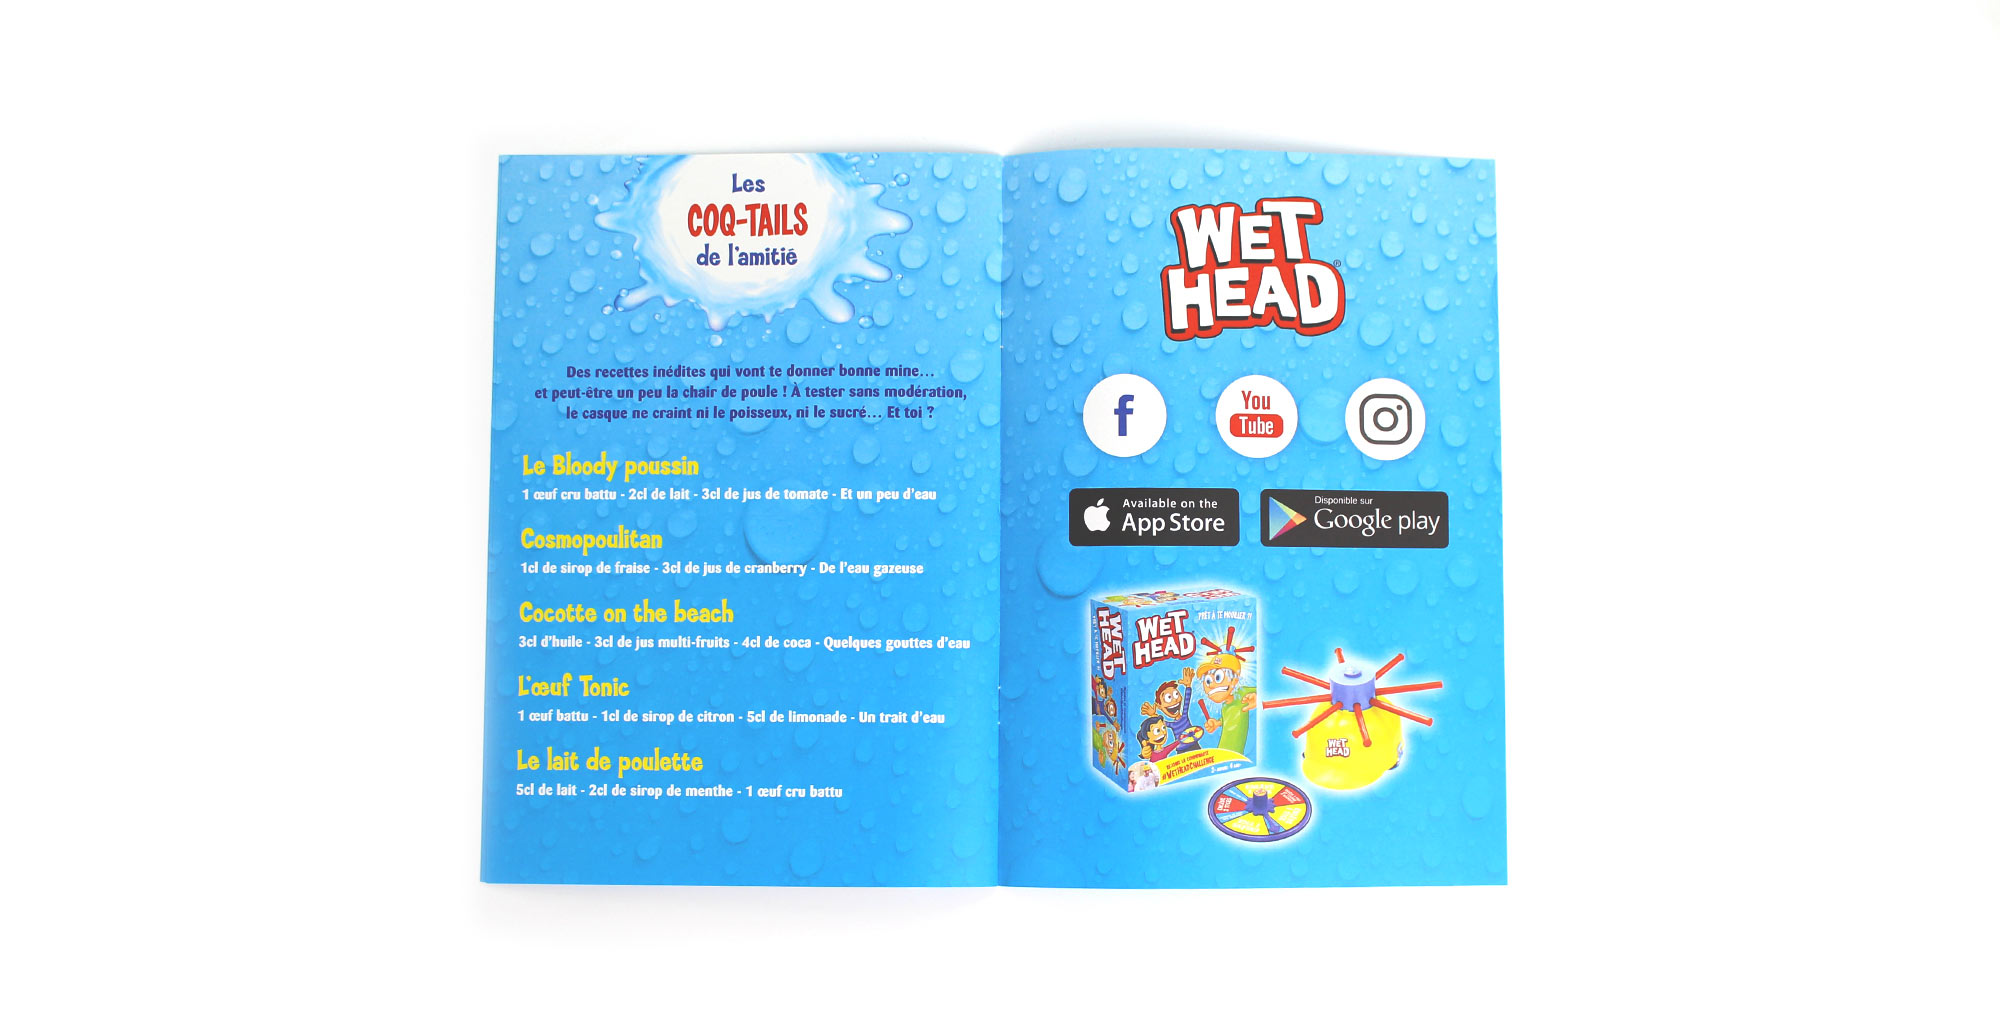 Sharing Agency - Stratégie de communication pour Wet Head Challenge